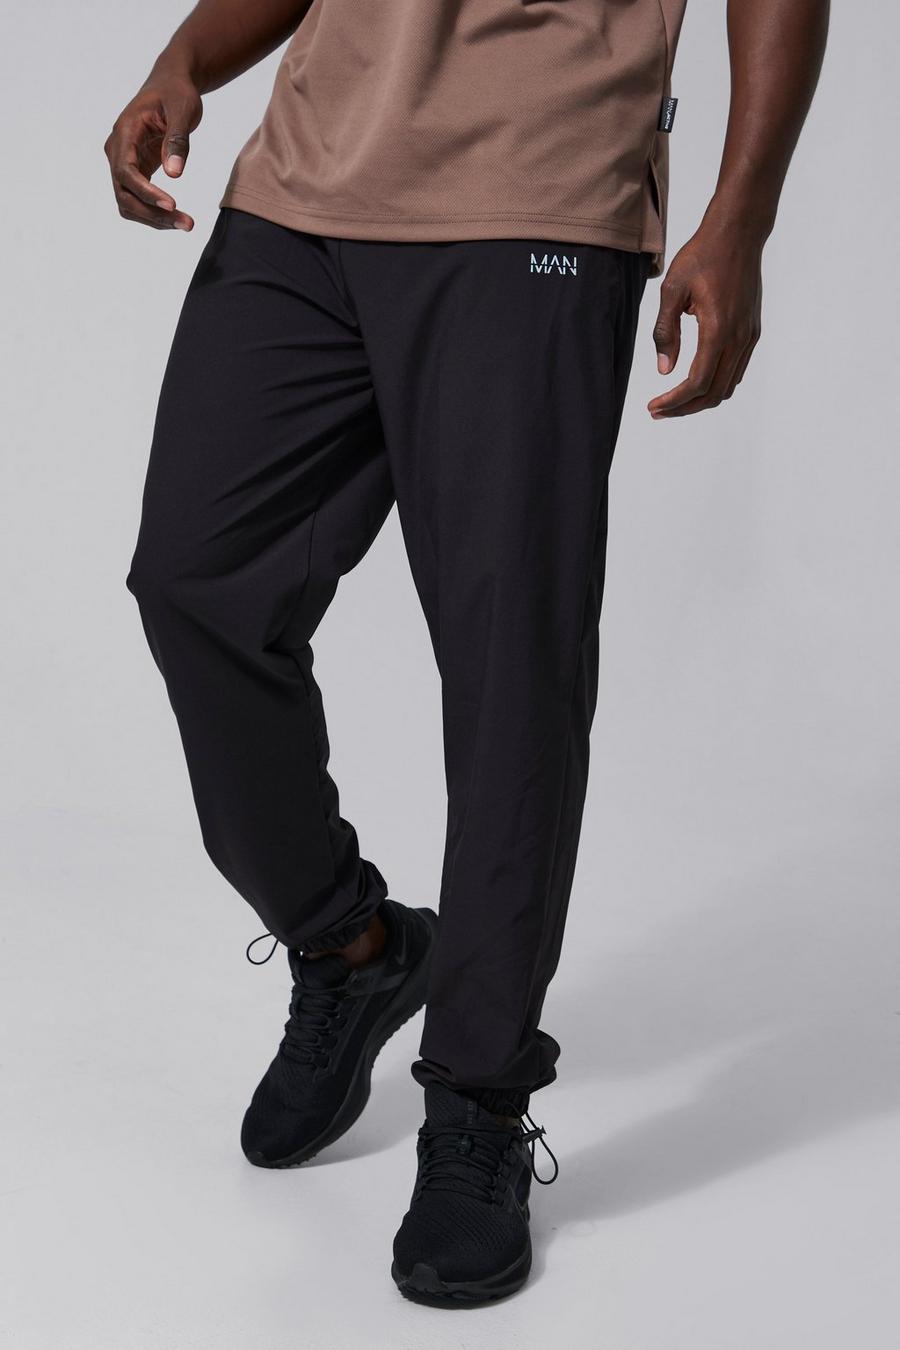 שחור negro מכנסי טרנינג ספורטיביים עם שרוך בנג'י במכפלת וכיתוב Man, לגברים גבוהים image number 1